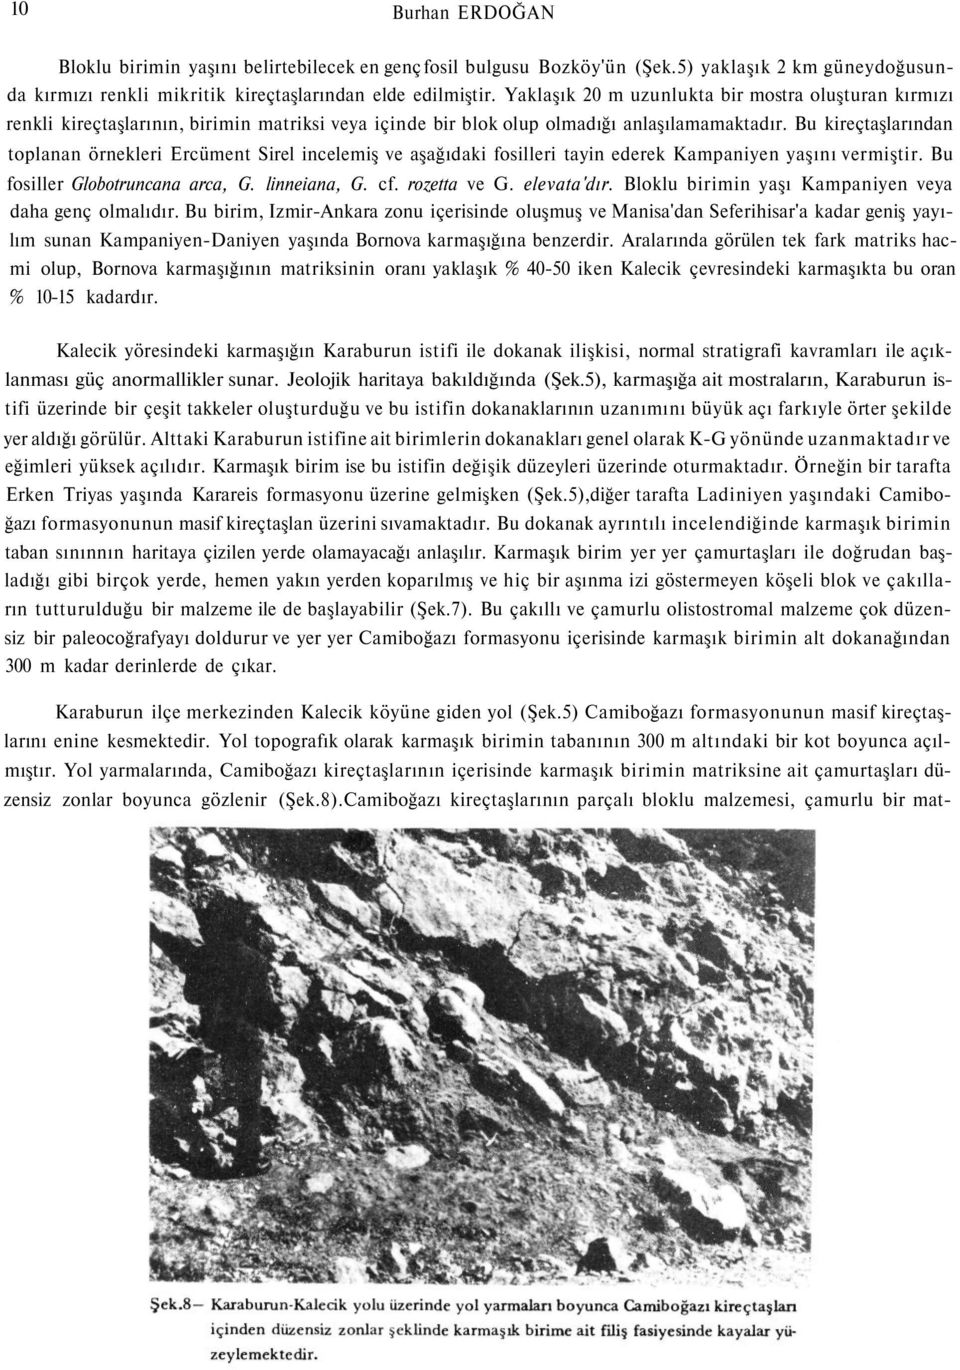 Bu kireçtaşlarından toplanan örnekleri Ercüment Sirel incelemiş ve aşağıdaki fosilleri tayin ederek Kampaniyen yaşını vermiştir. Bu fosiller Globotruncana arca, G. linneiana, G. cf. rozetta ve G.